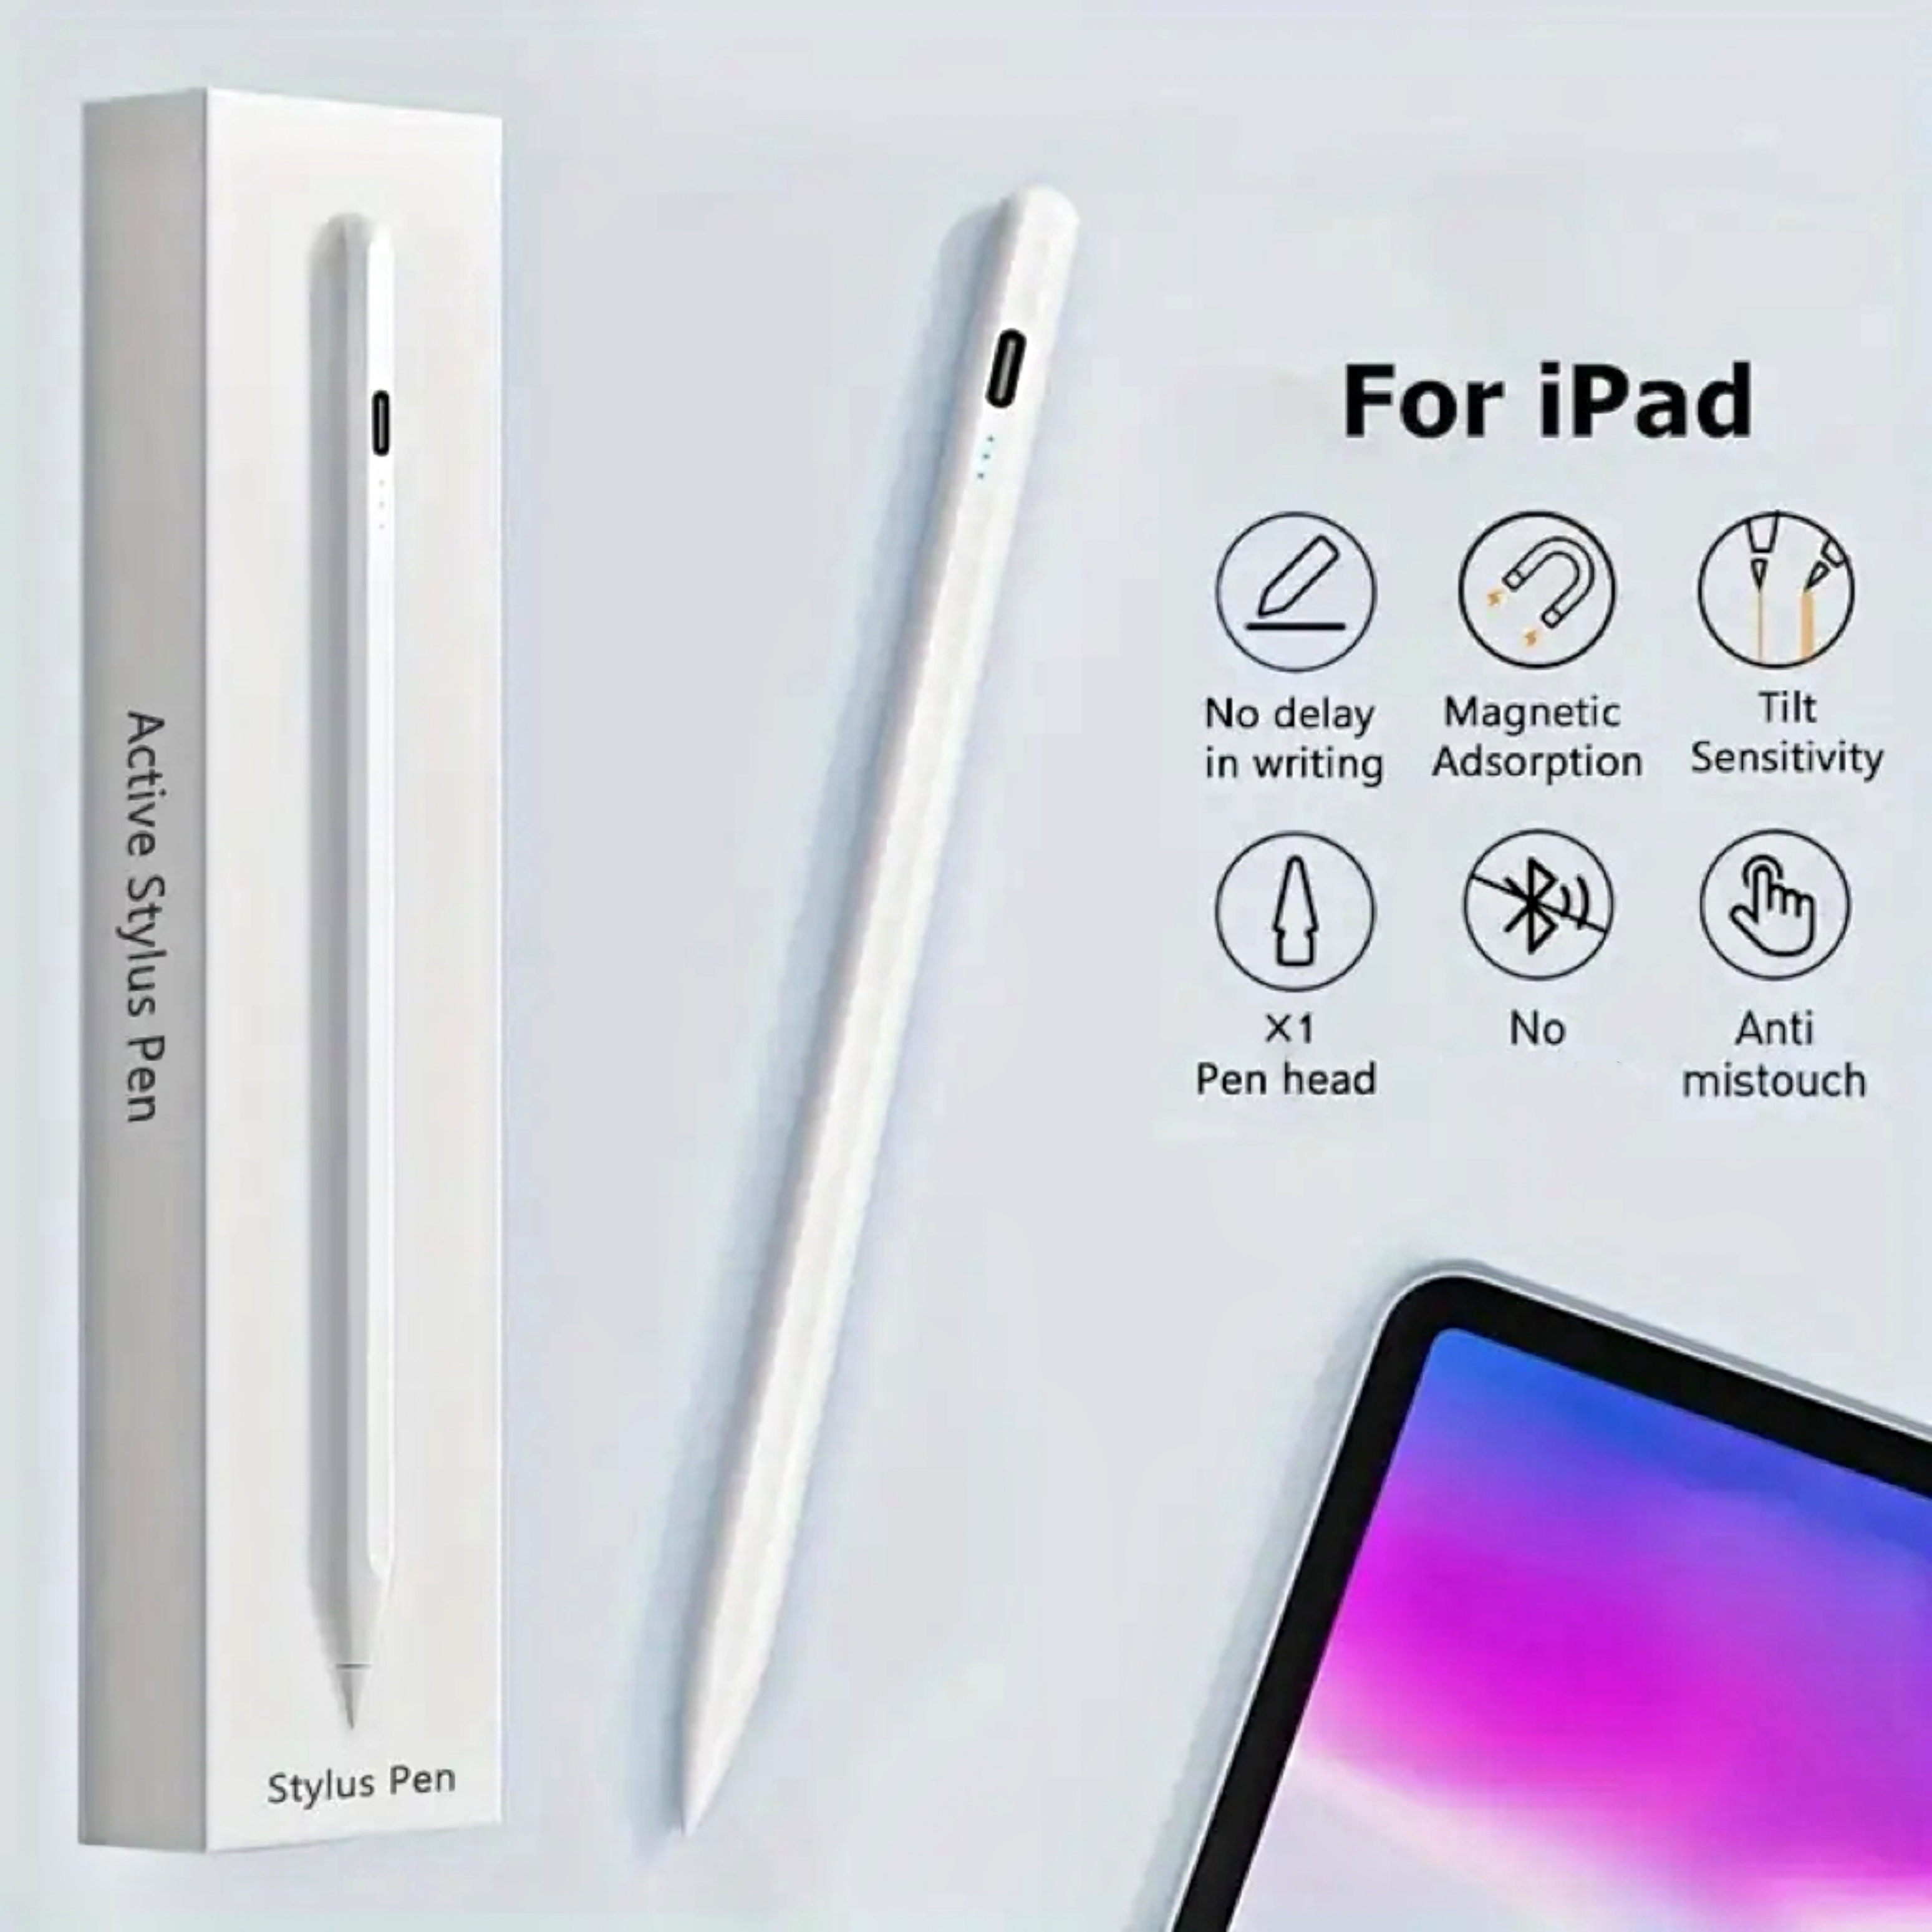 Lápiz iPad de 2ª generación USB-C (carga rápida de 10 minutos), Apple  Pencil profesional de 2ª generación con rechazo de palma y sensibilidad al